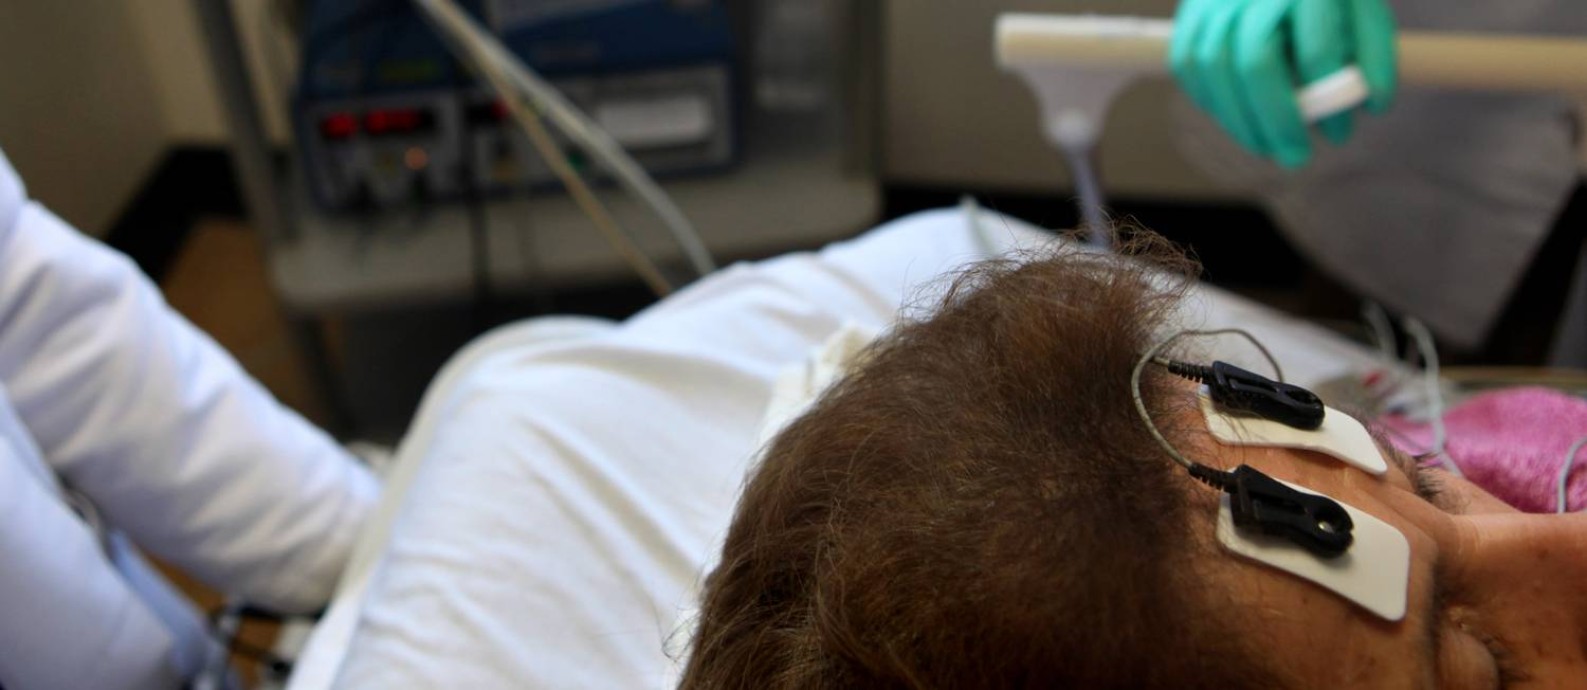 Médicos preparam uma paciente para recever a eletroconvulsoterapia, em hospital de NY, em imagem de 2011. Foto: RICHARD PERRY / NYT